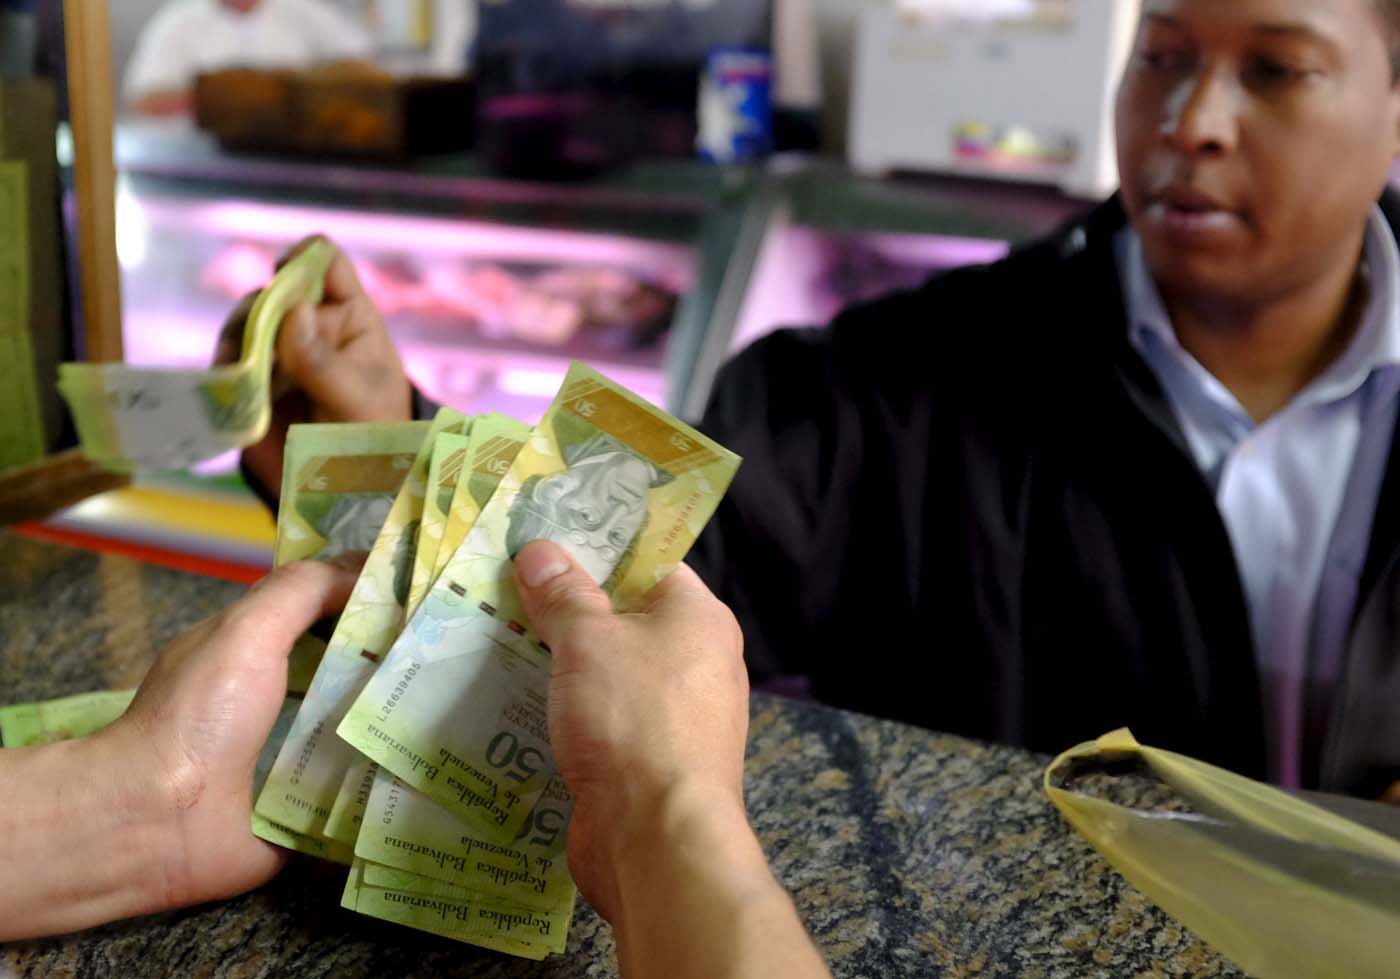 Inflación en Venezuela podría cerrar en 326,5% este año, según Credit Suisse